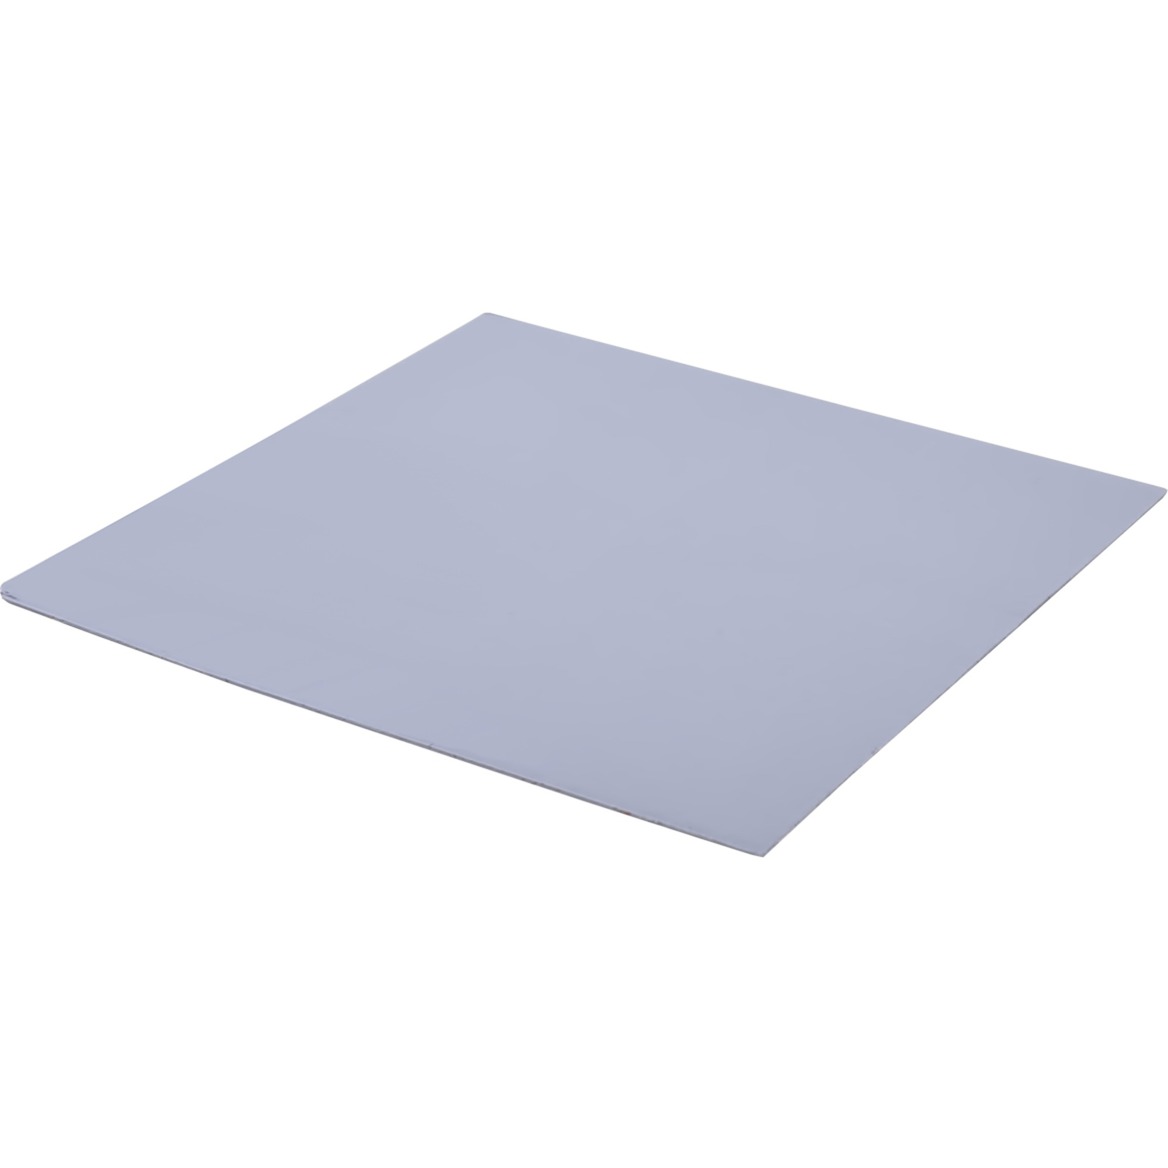 Image of Alternate - Eisschicht Wärmeleitpad - 14W/mK 100x100x0,5mm, Wärmeleitpads online einkaufen bei Alternate